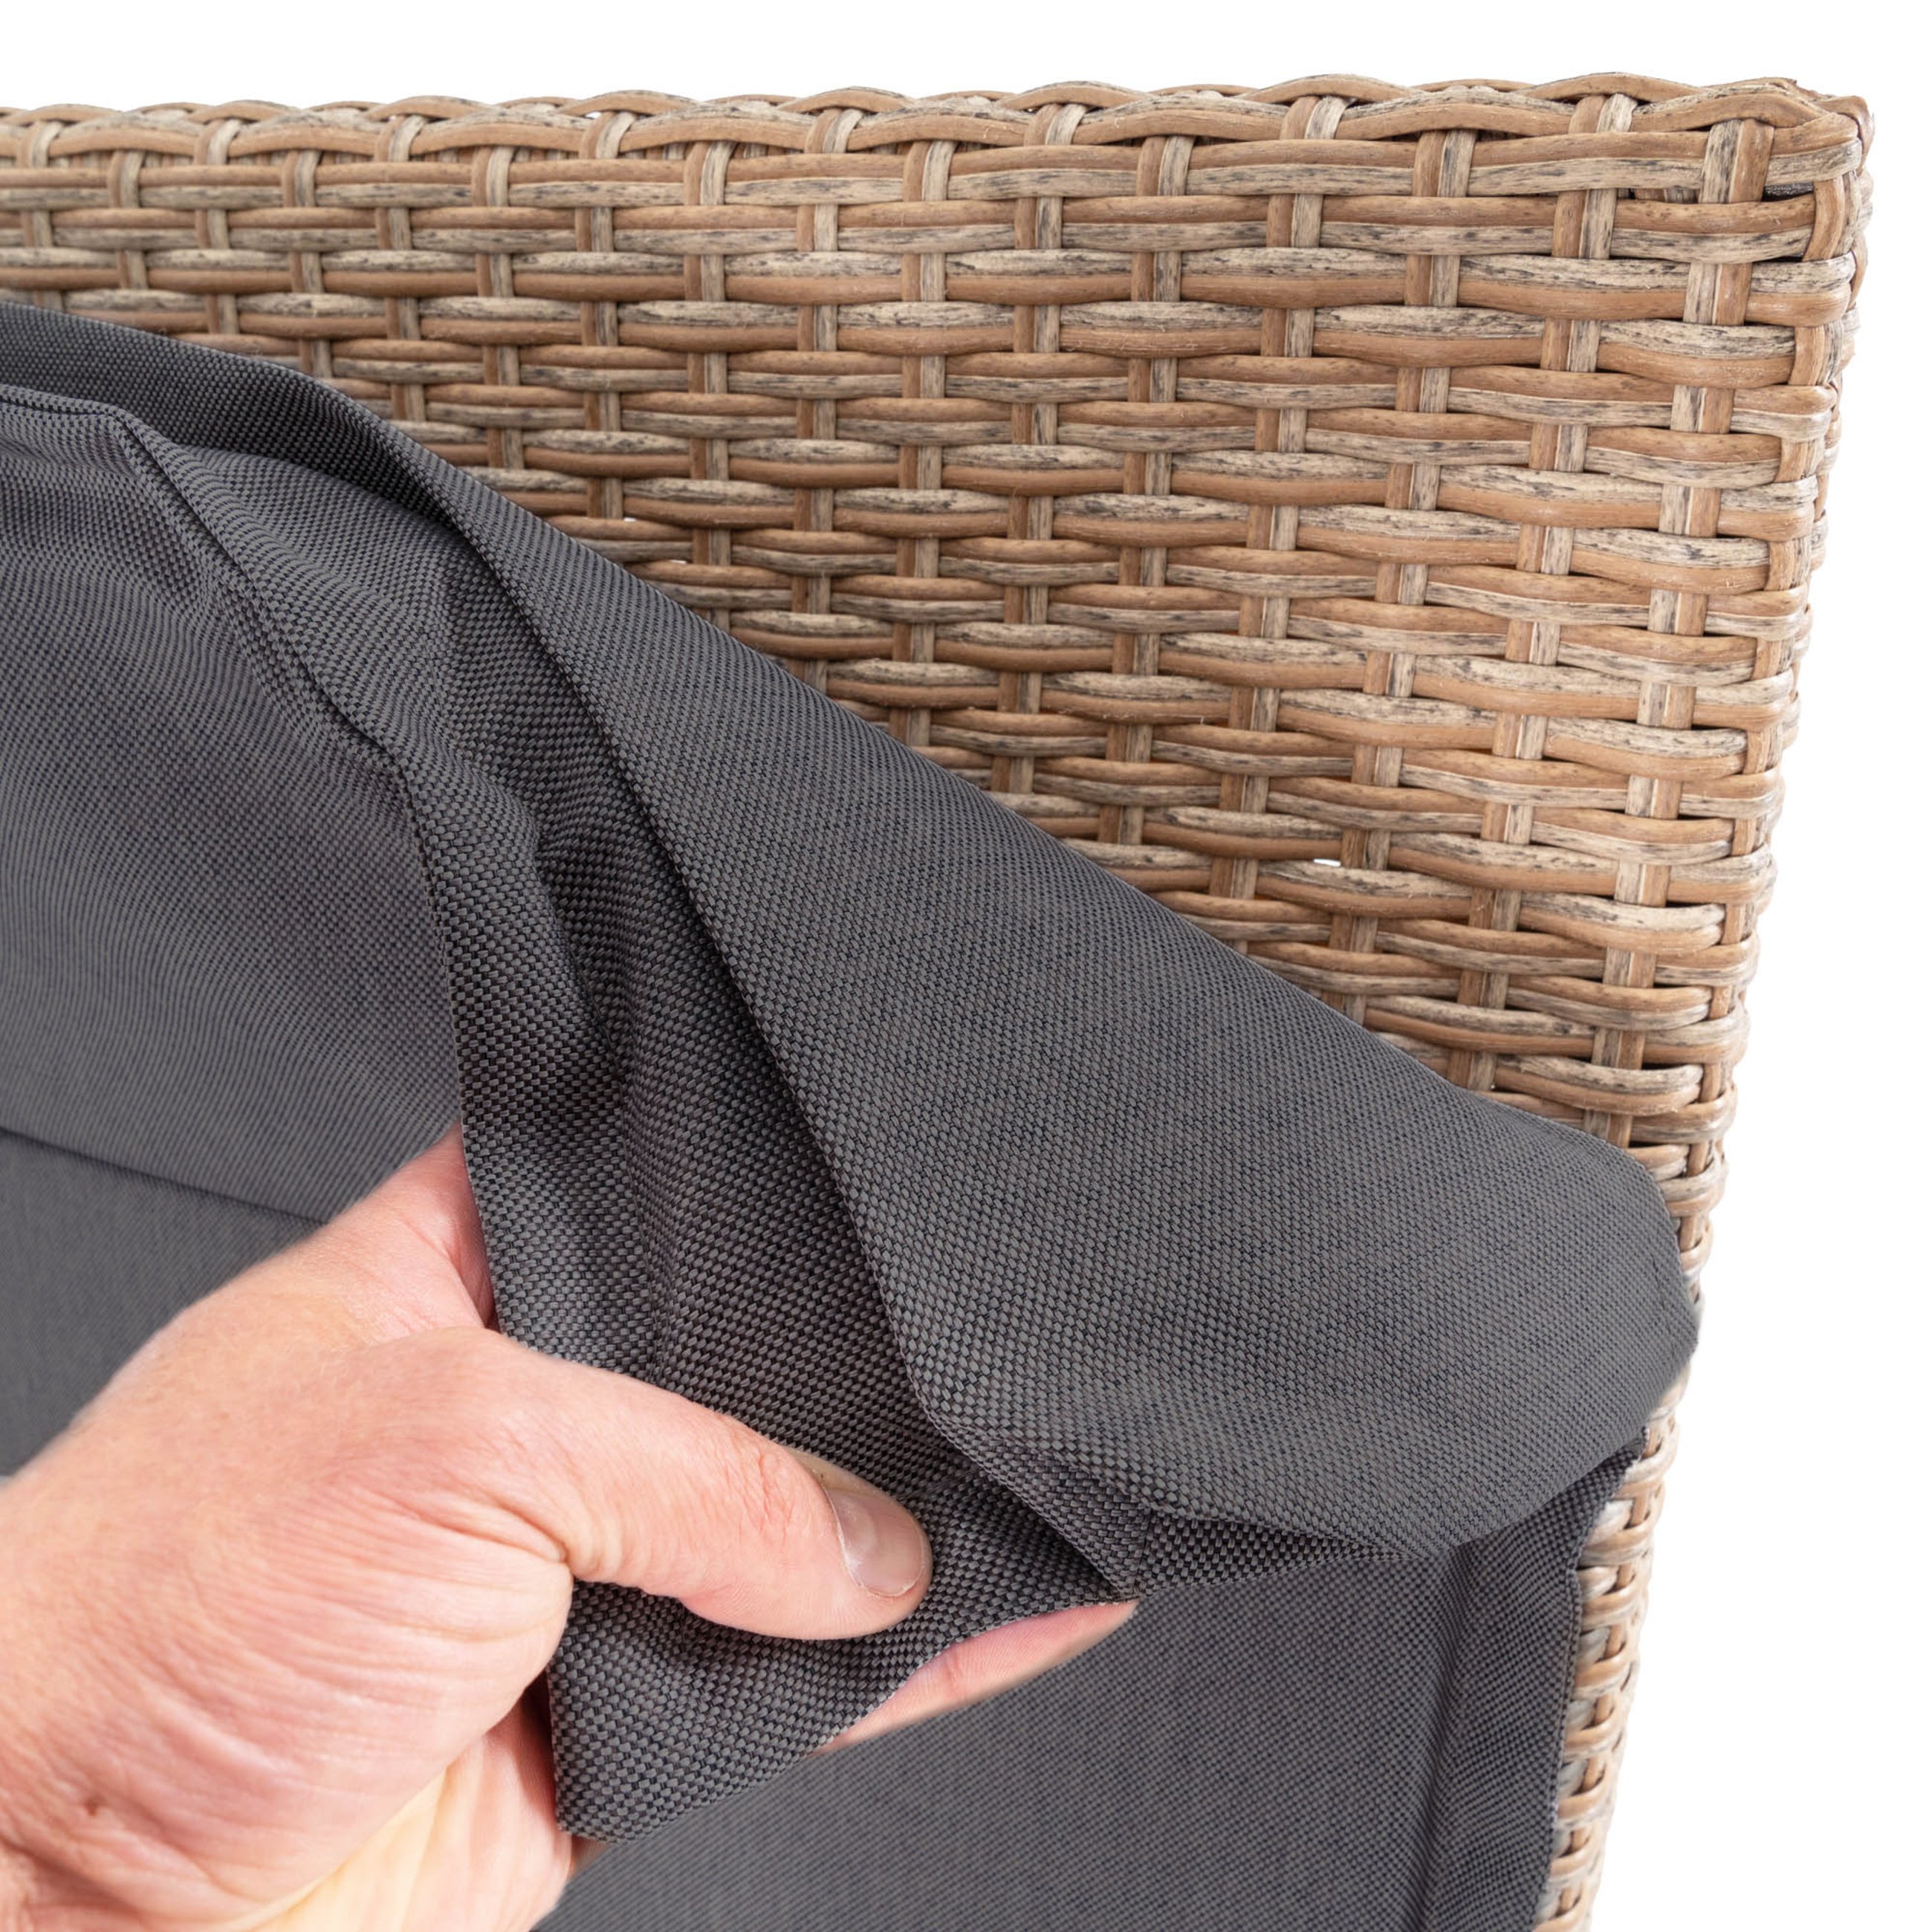 W trosce o Twój komfort leżak ogrodowy Ciampino beżowy wyposażony został w dużą, miękką poduszkę o grubości 4 cm